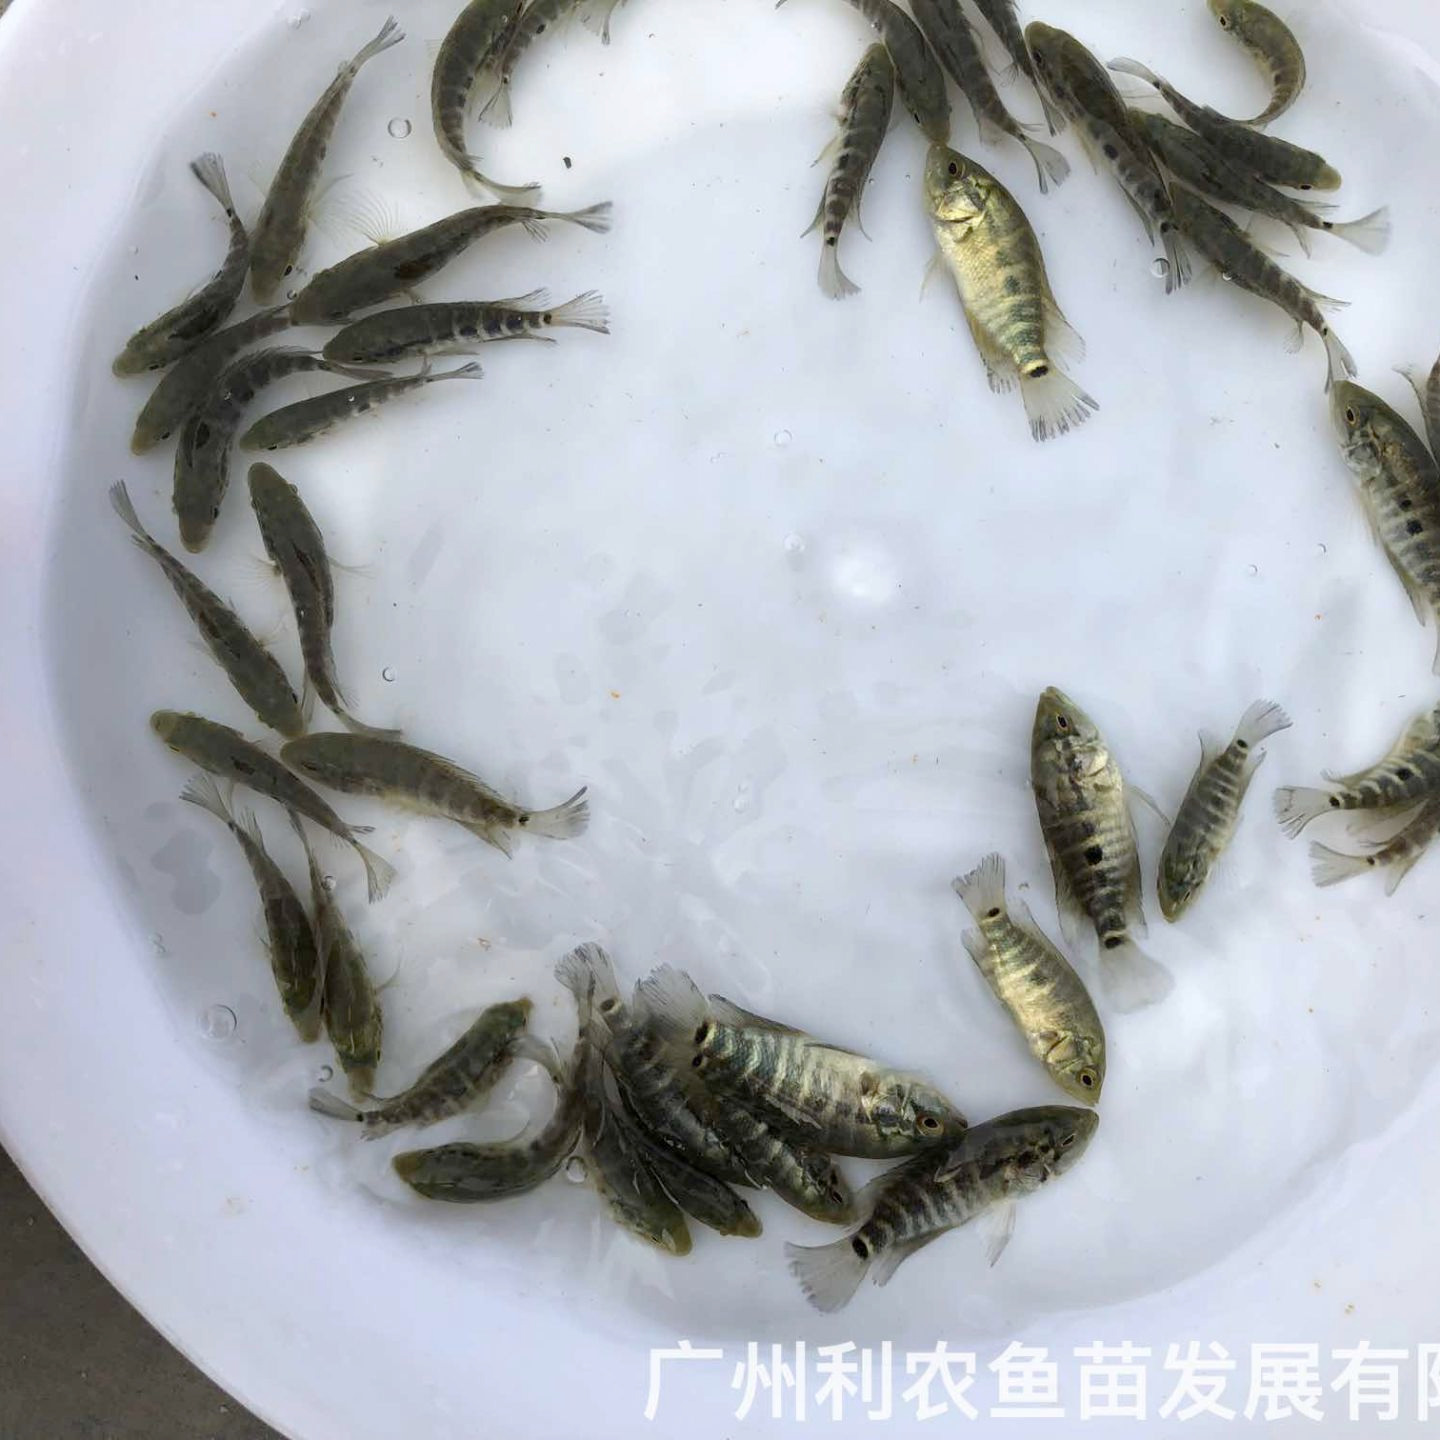 江西吉安淡水花斑鱼苗出售江西上饶石斑鱼苗批发价格